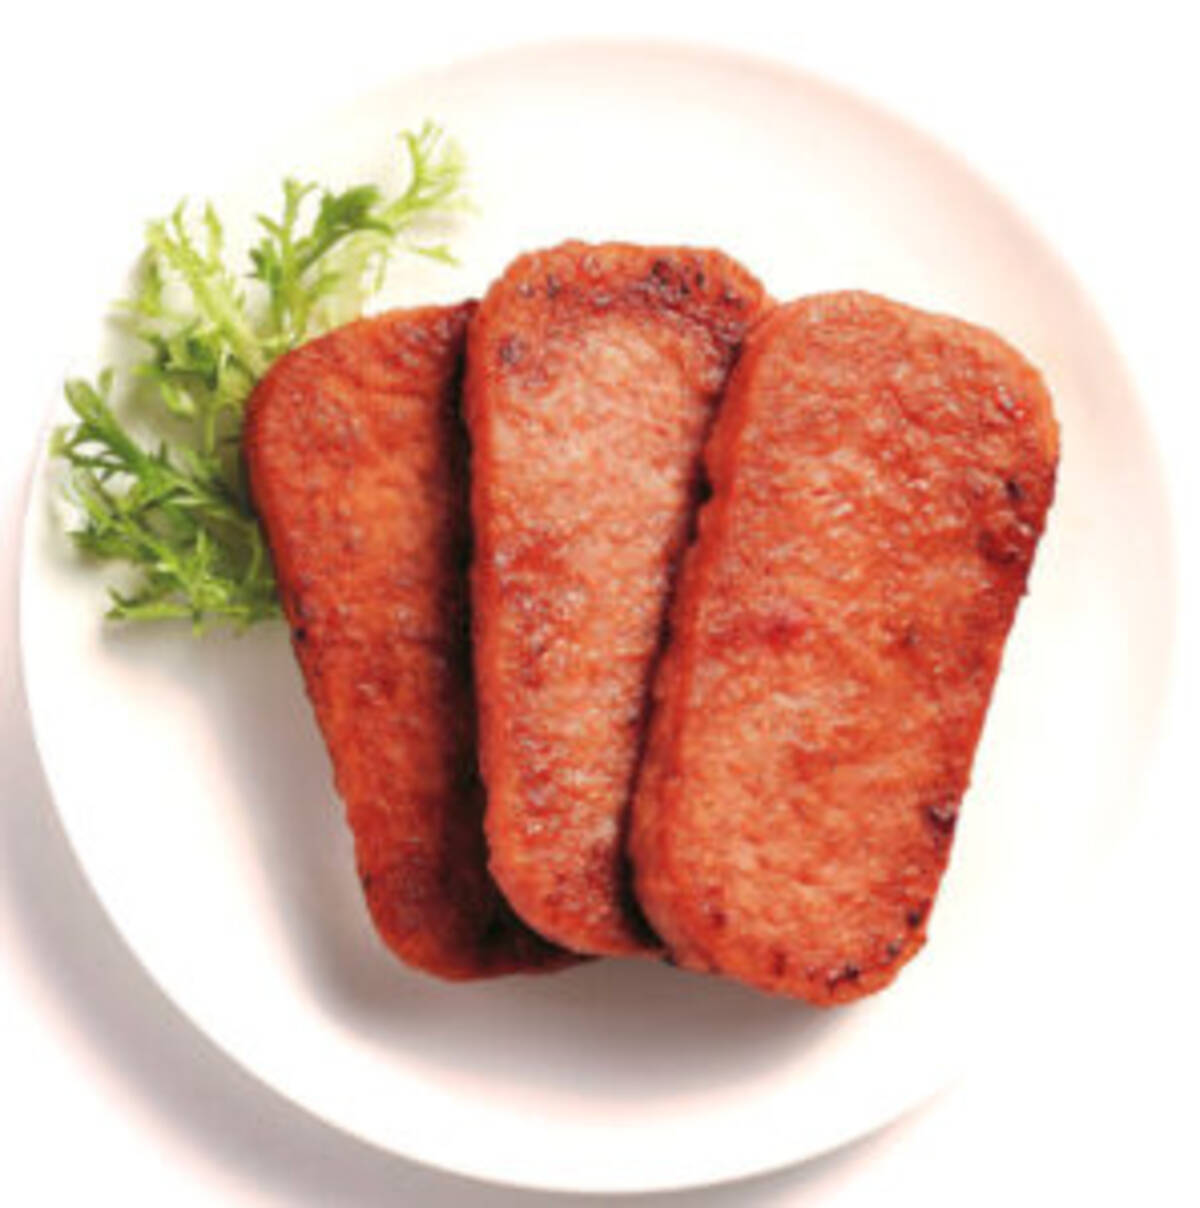 肉代替に豚挽肉で参入 香港の 世界を変える企業 が上陸 食感での差別化に自信 第二弾はスパム 21年3月8日 エキサイトニュース